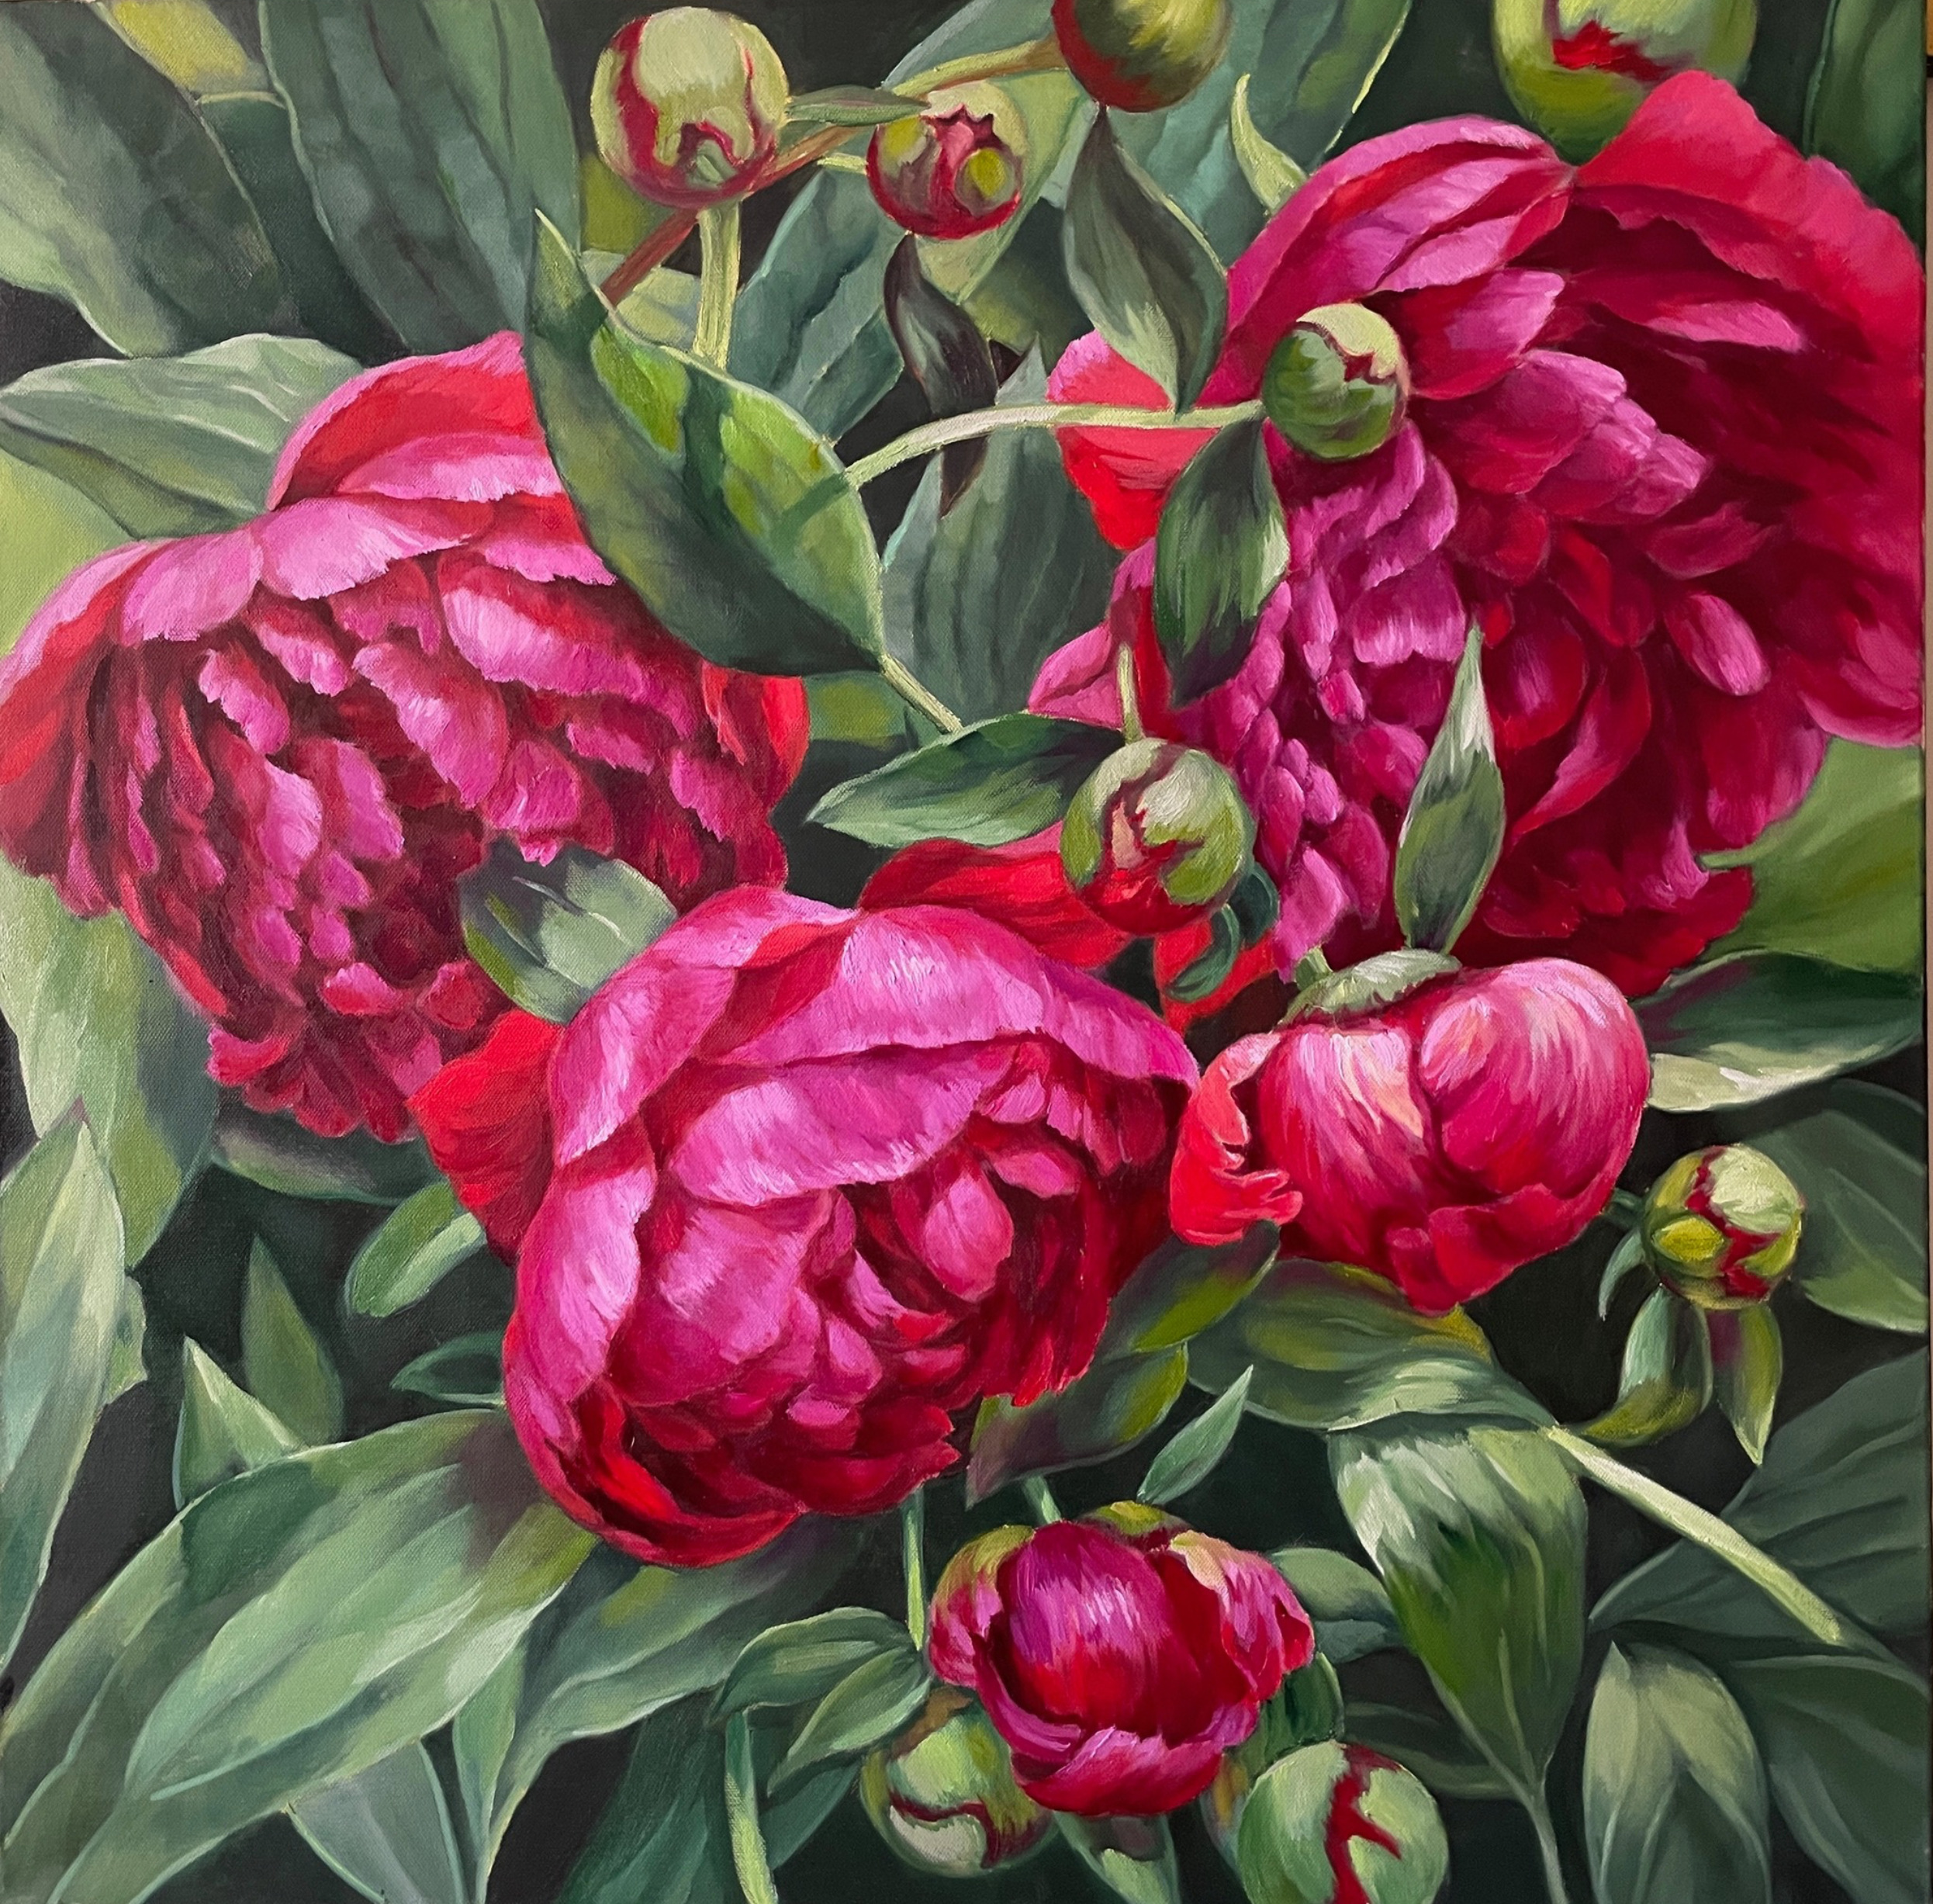 La peinture "Hushed Pink Symphony" d'Anna Reznikova montre, avec des traits volumineux en technique d'empreinte et peints au pinceau sur la toile, un magnifique tableau de fleurs. Les fleurs sont roses, roses et rouges, avec des feuilles peintes en vert clair.